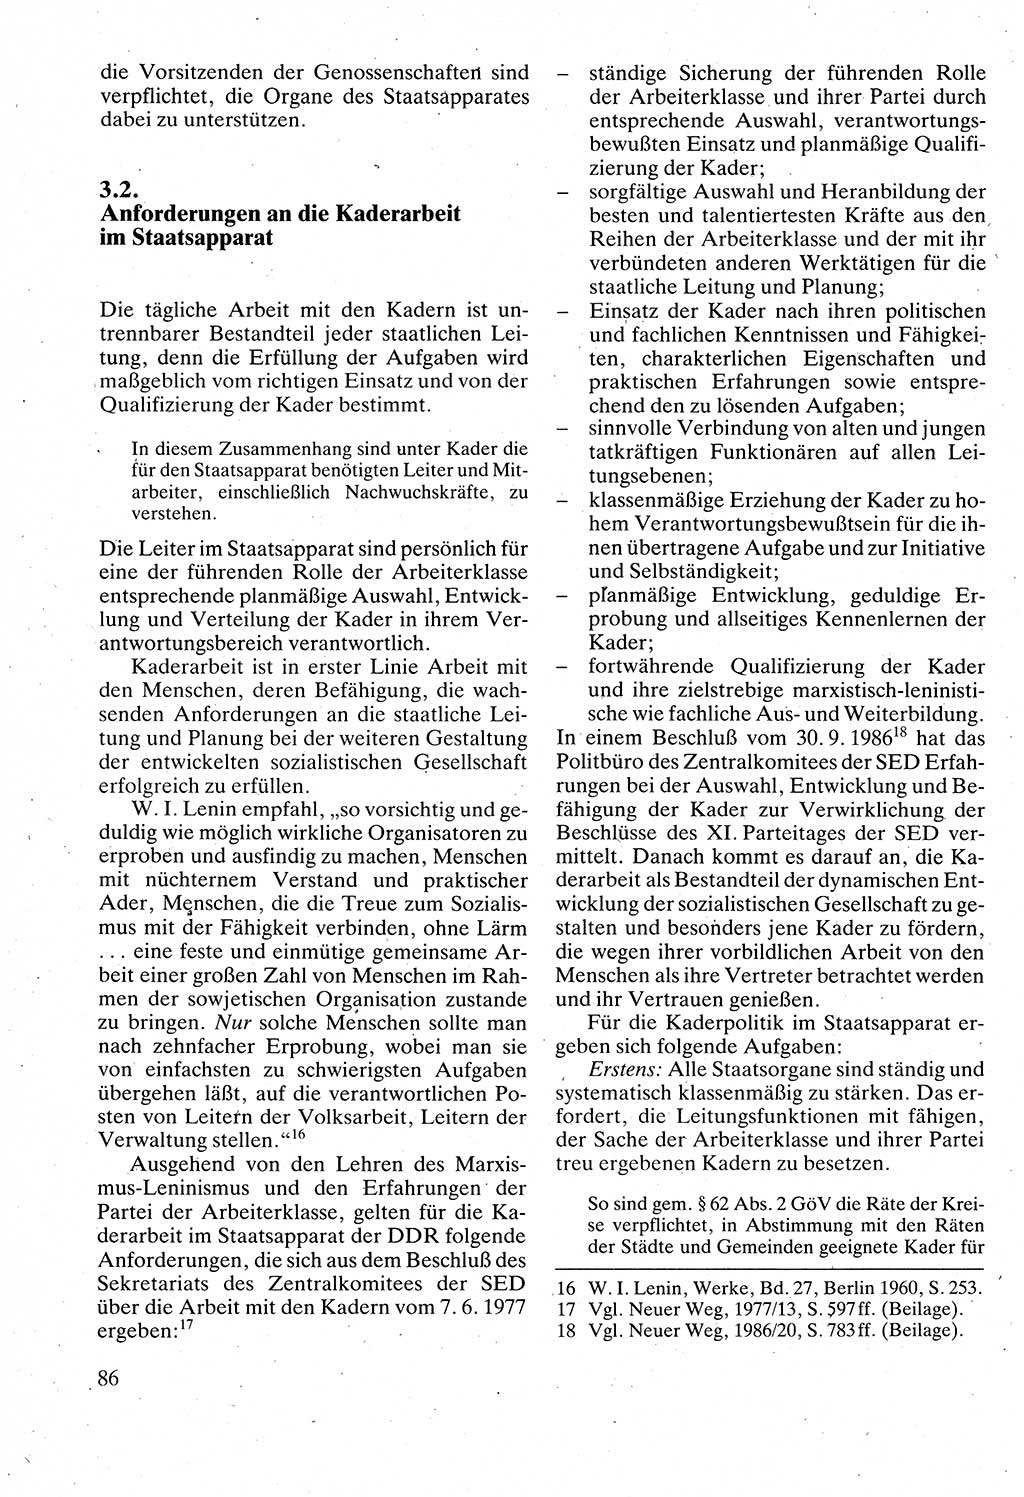 Verwaltungsrecht [Deutsche Demokratische Republik (DDR)], Lehrbuch 1988, Seite 86 (Verw.-R. DDR Lb. 1988, S. 86)